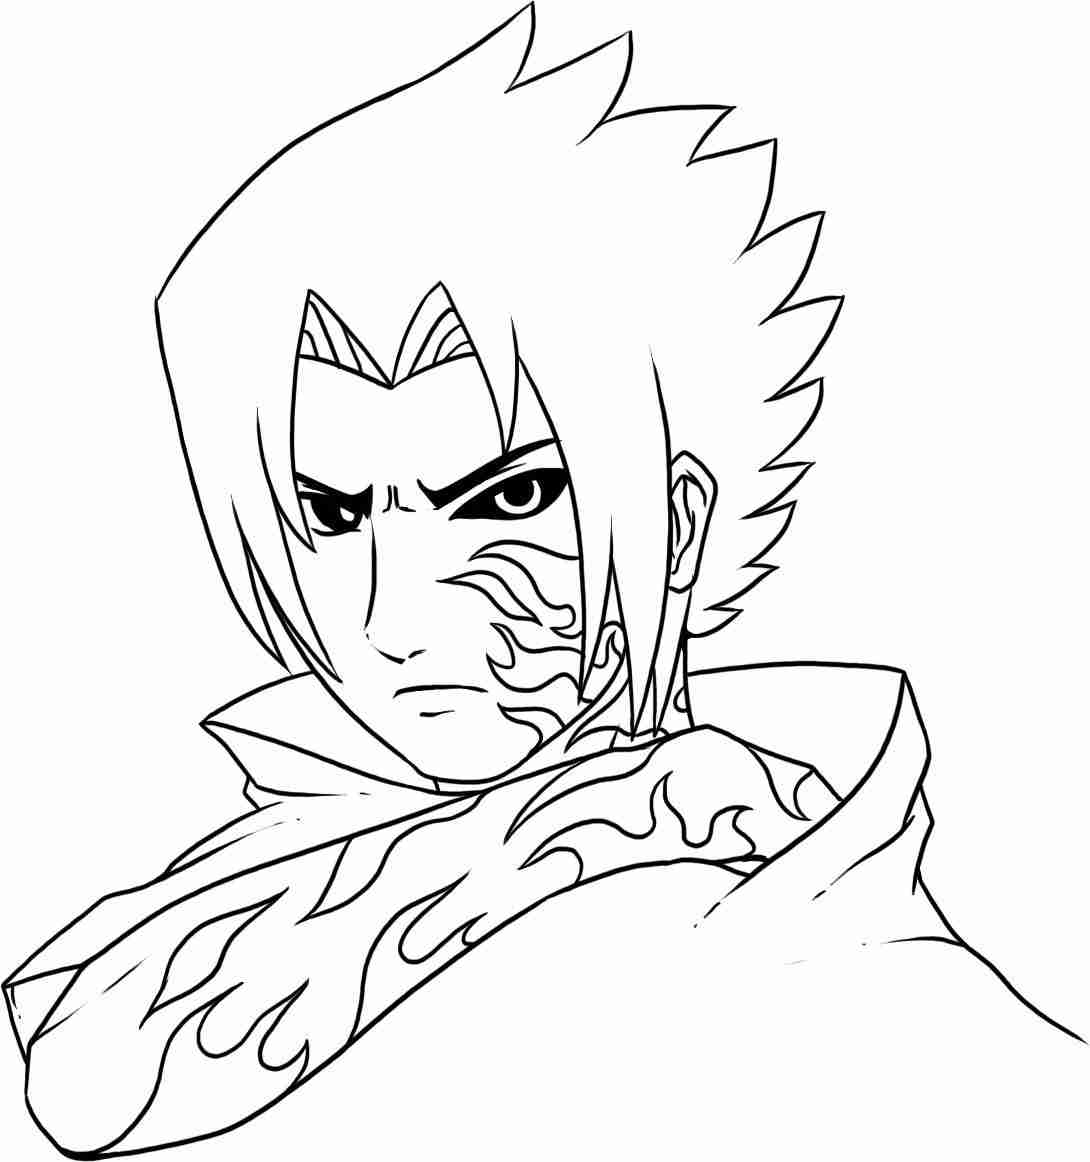 desenho de Sasuke encheu metade da marca de maldição especial em seu rosto e braço